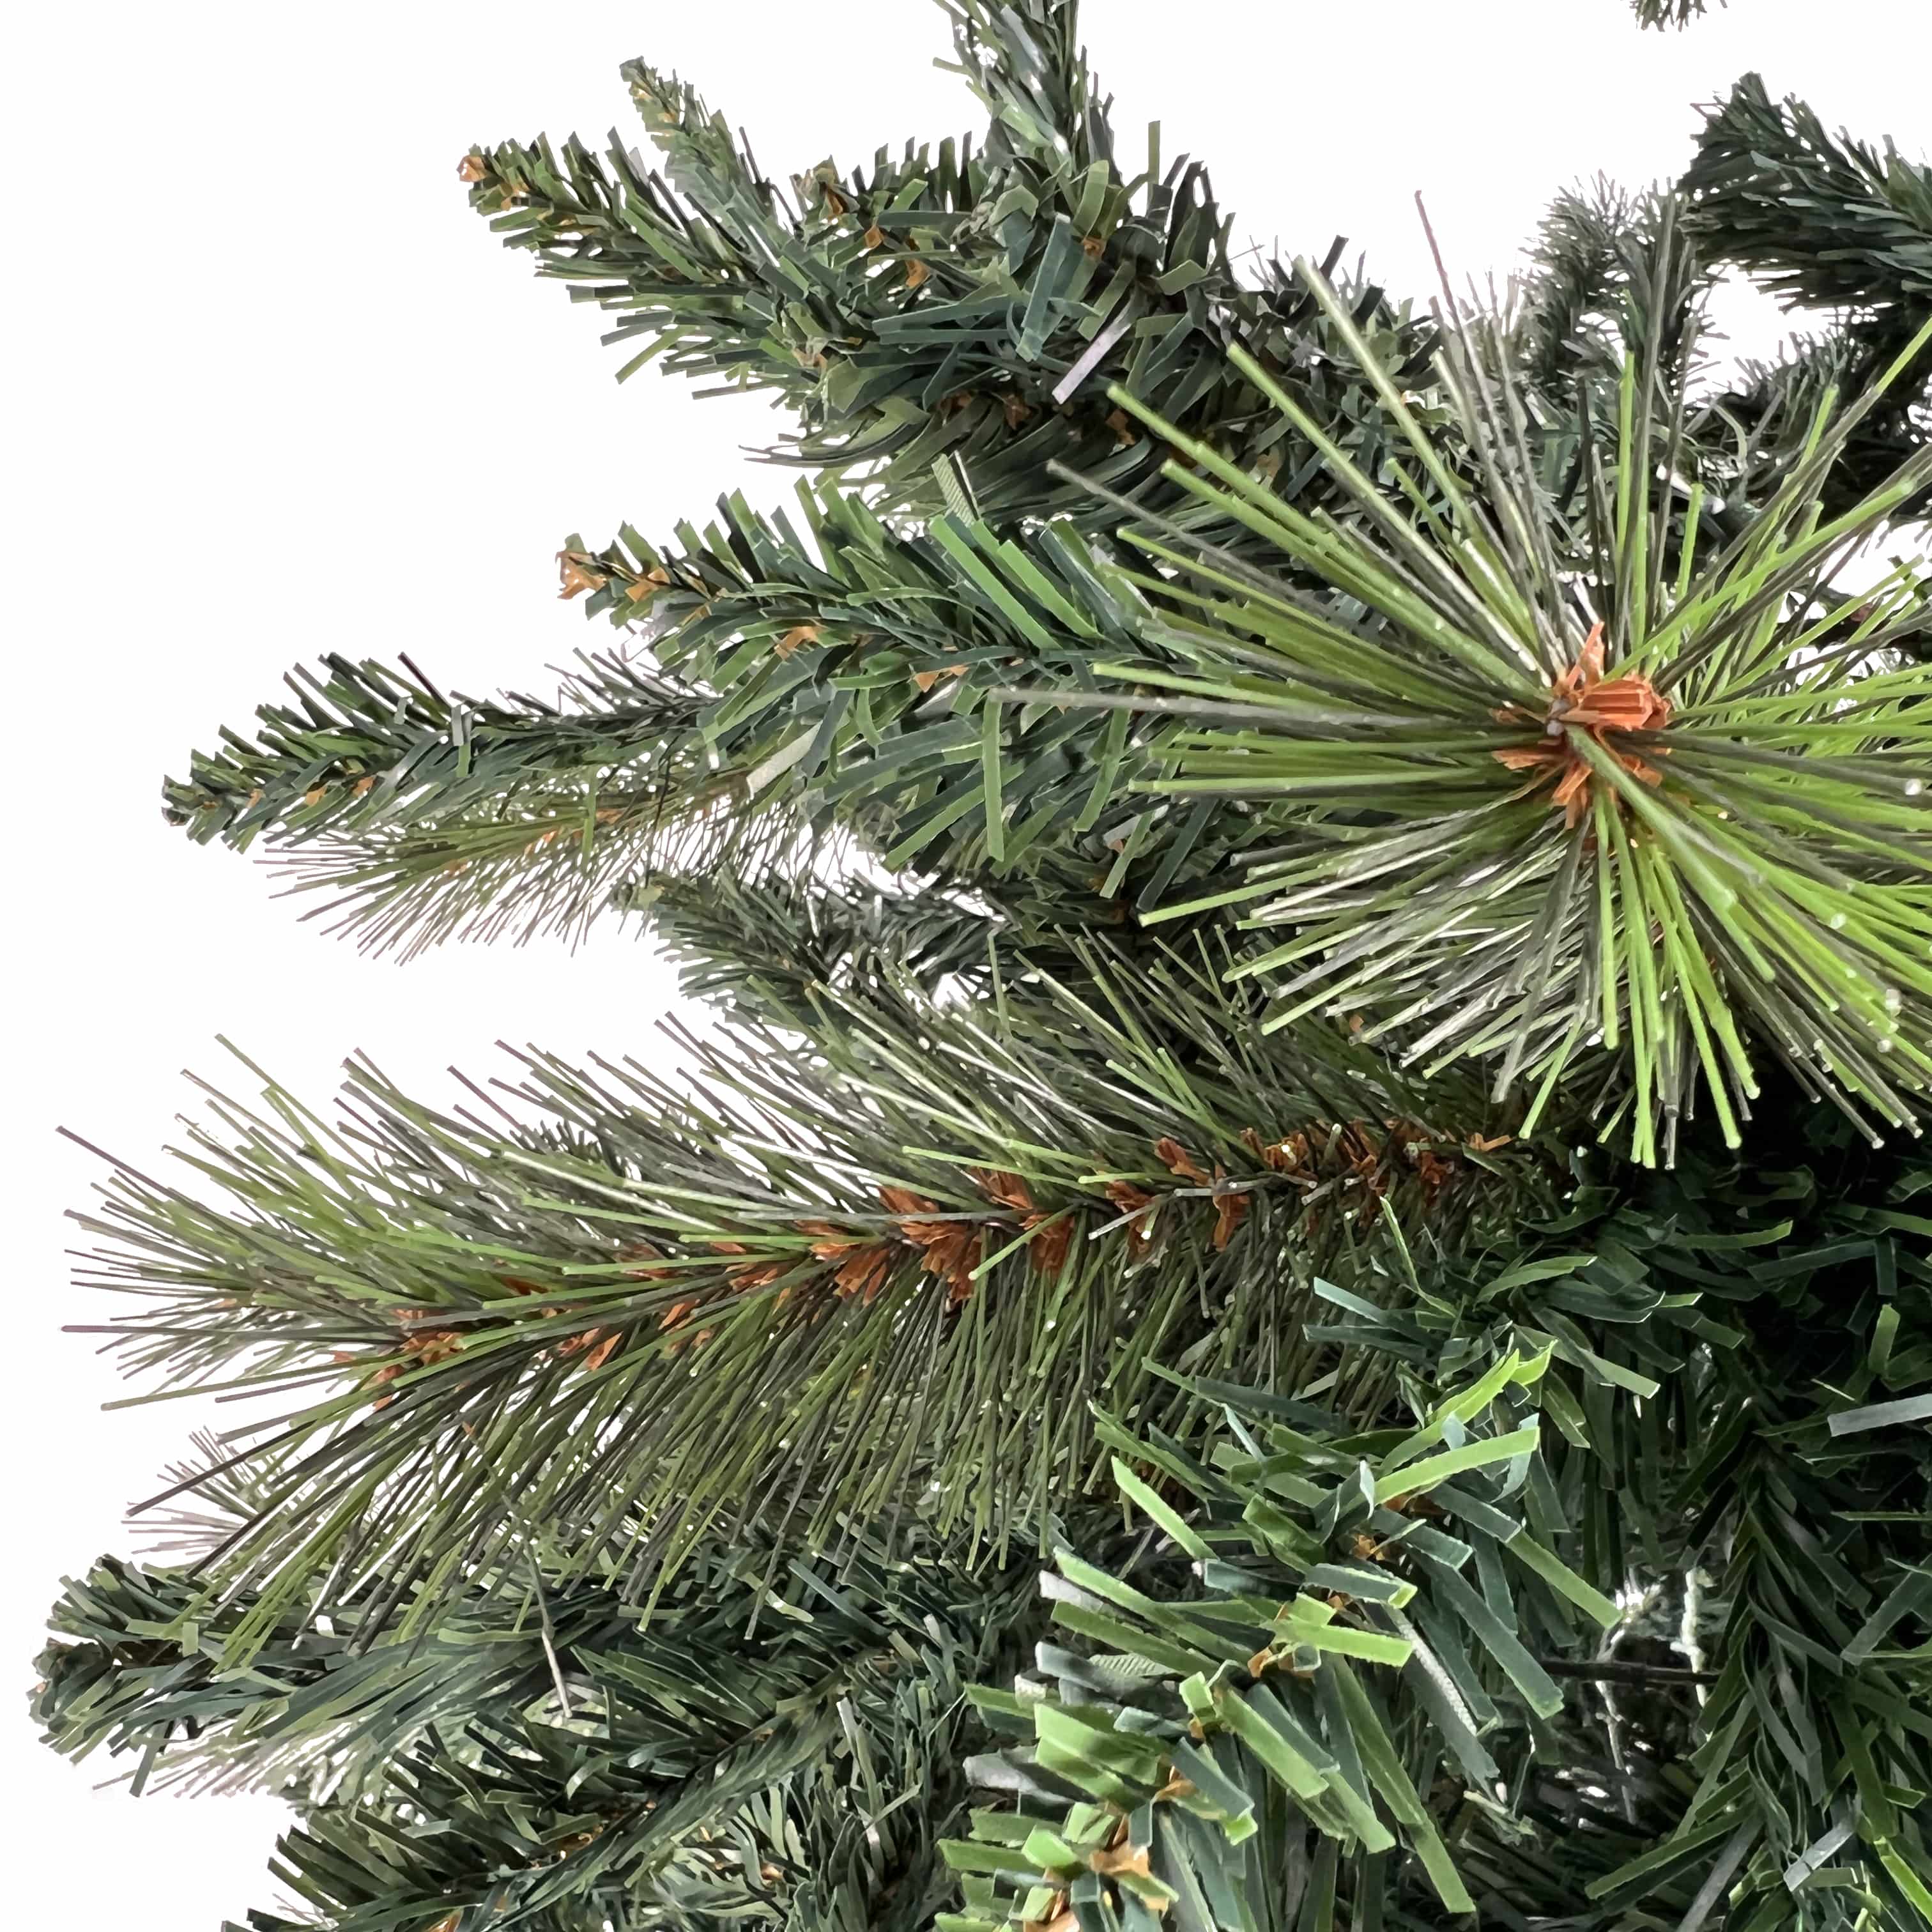 4goodz Kerstboom 215 cm met 1350 takpunten en standaard - Groen